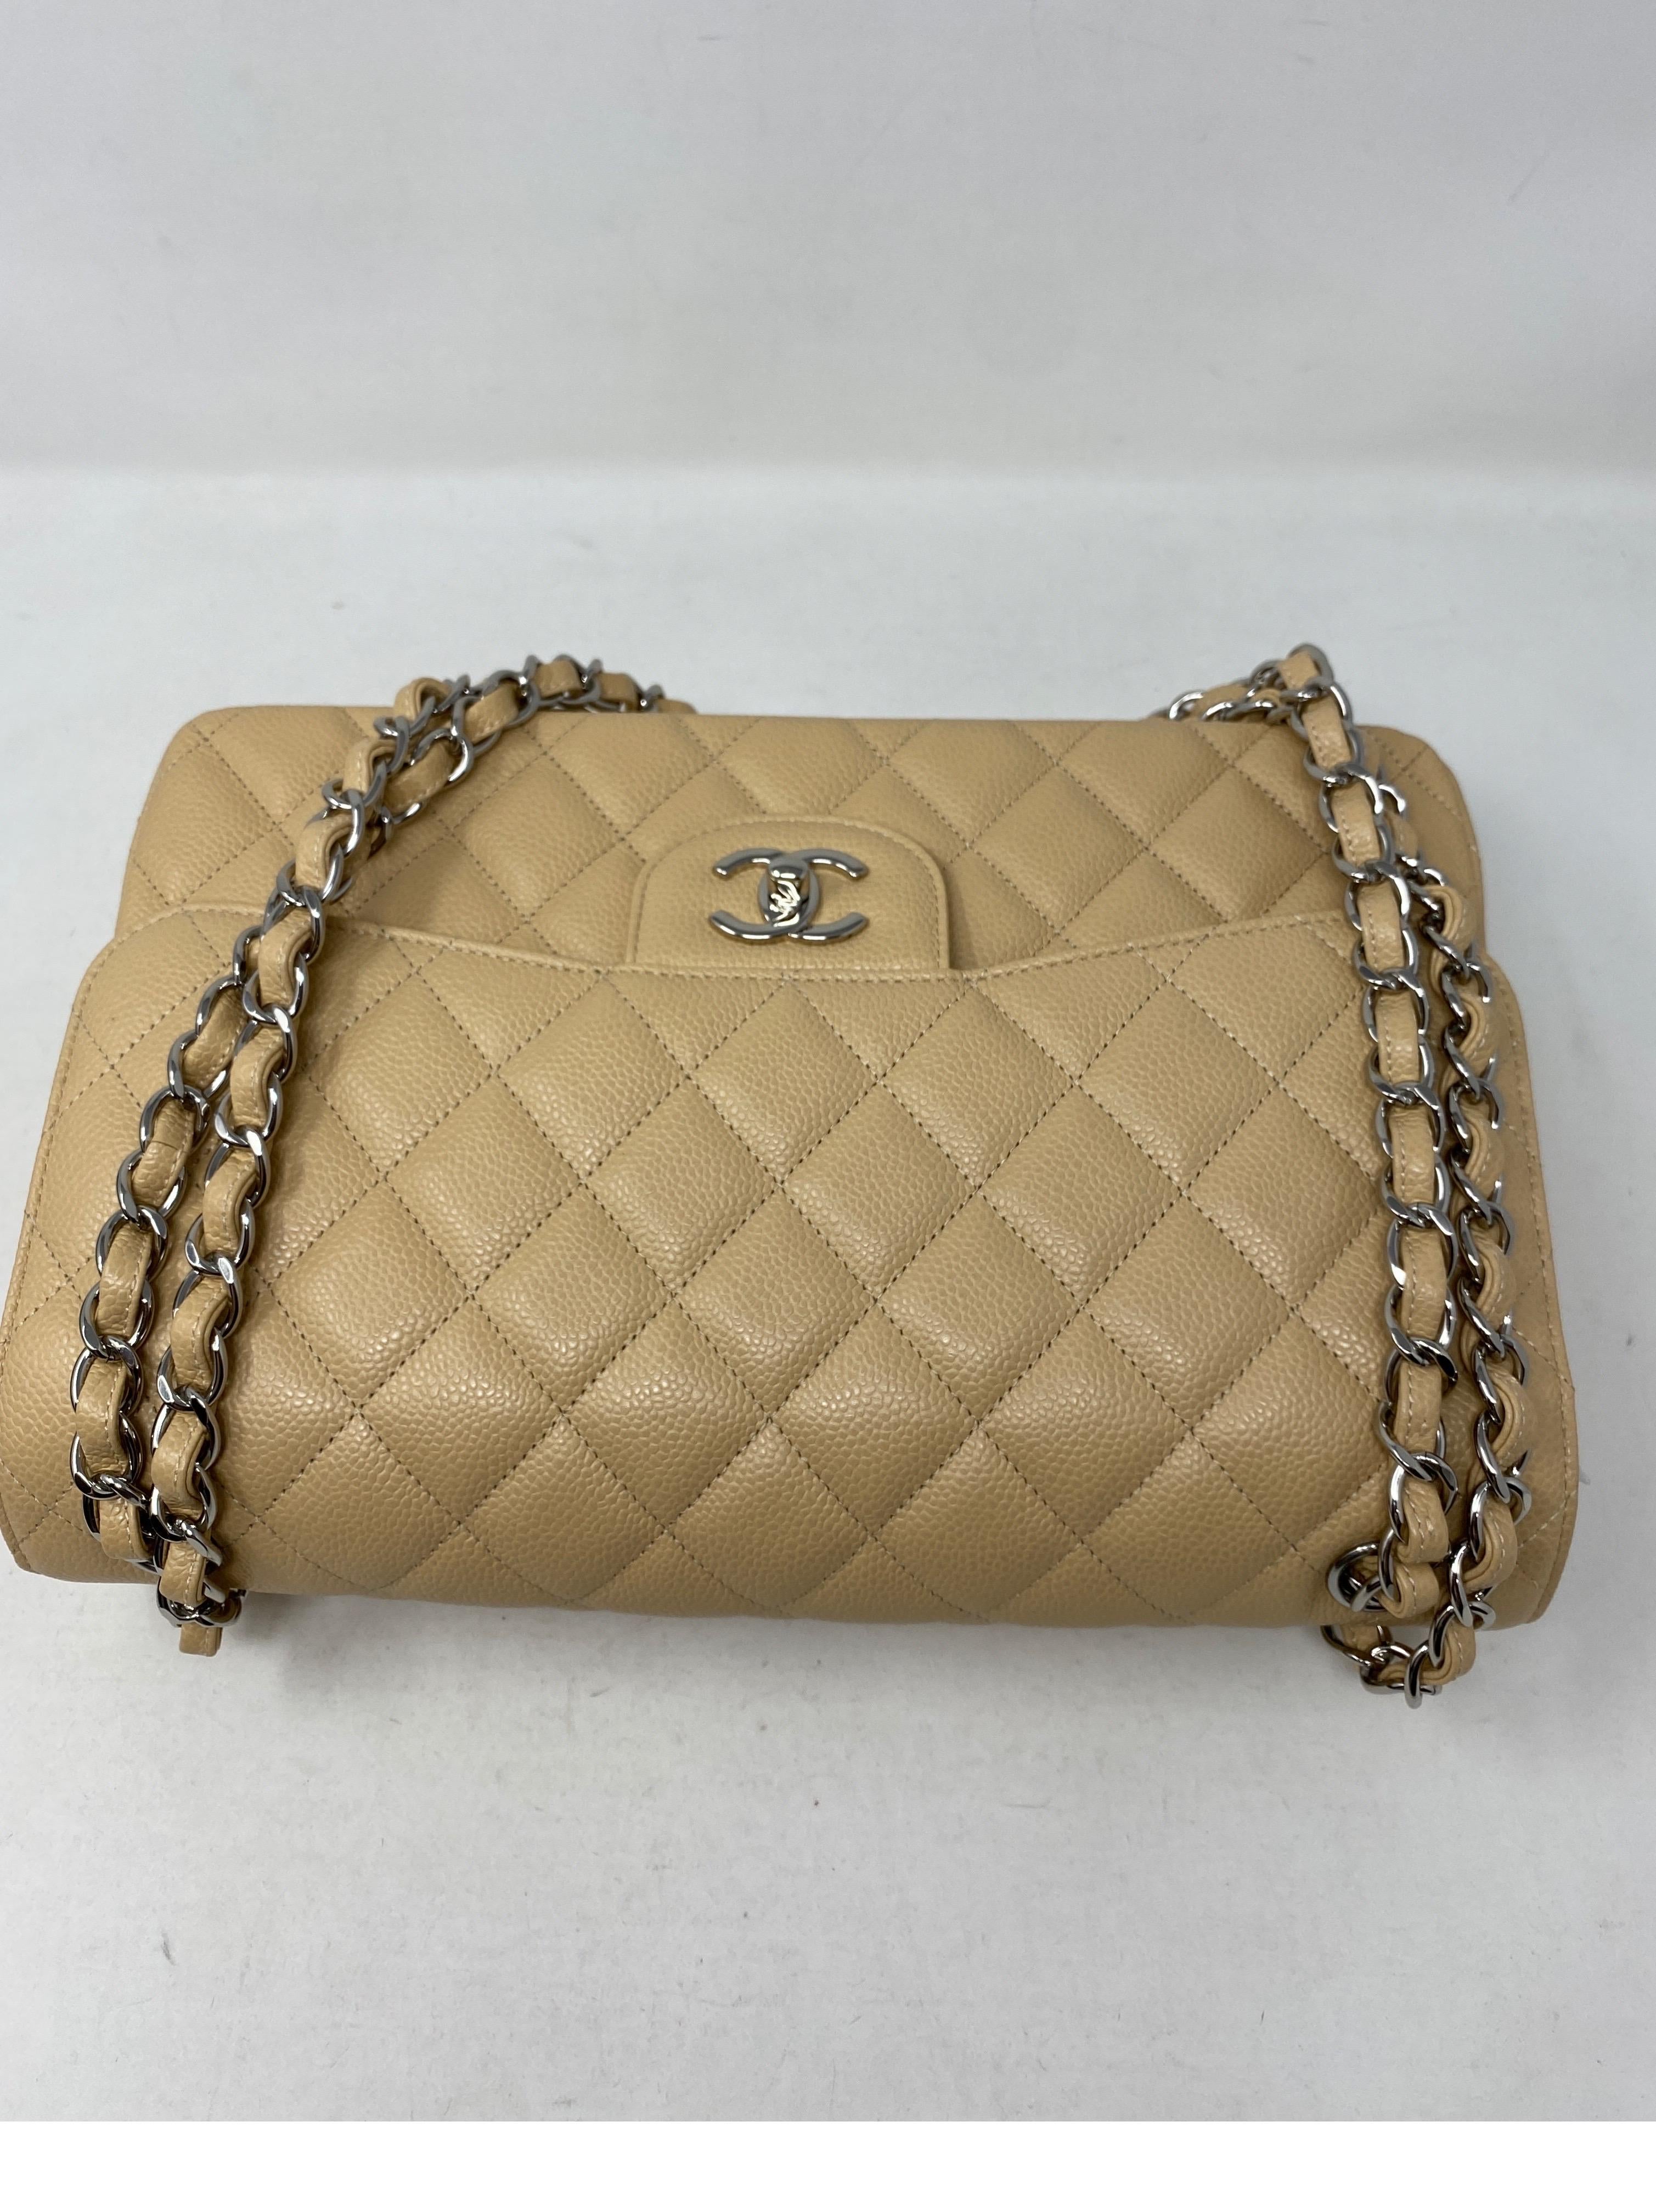 Chanel Beige Jumbo Double Flap Bag 2